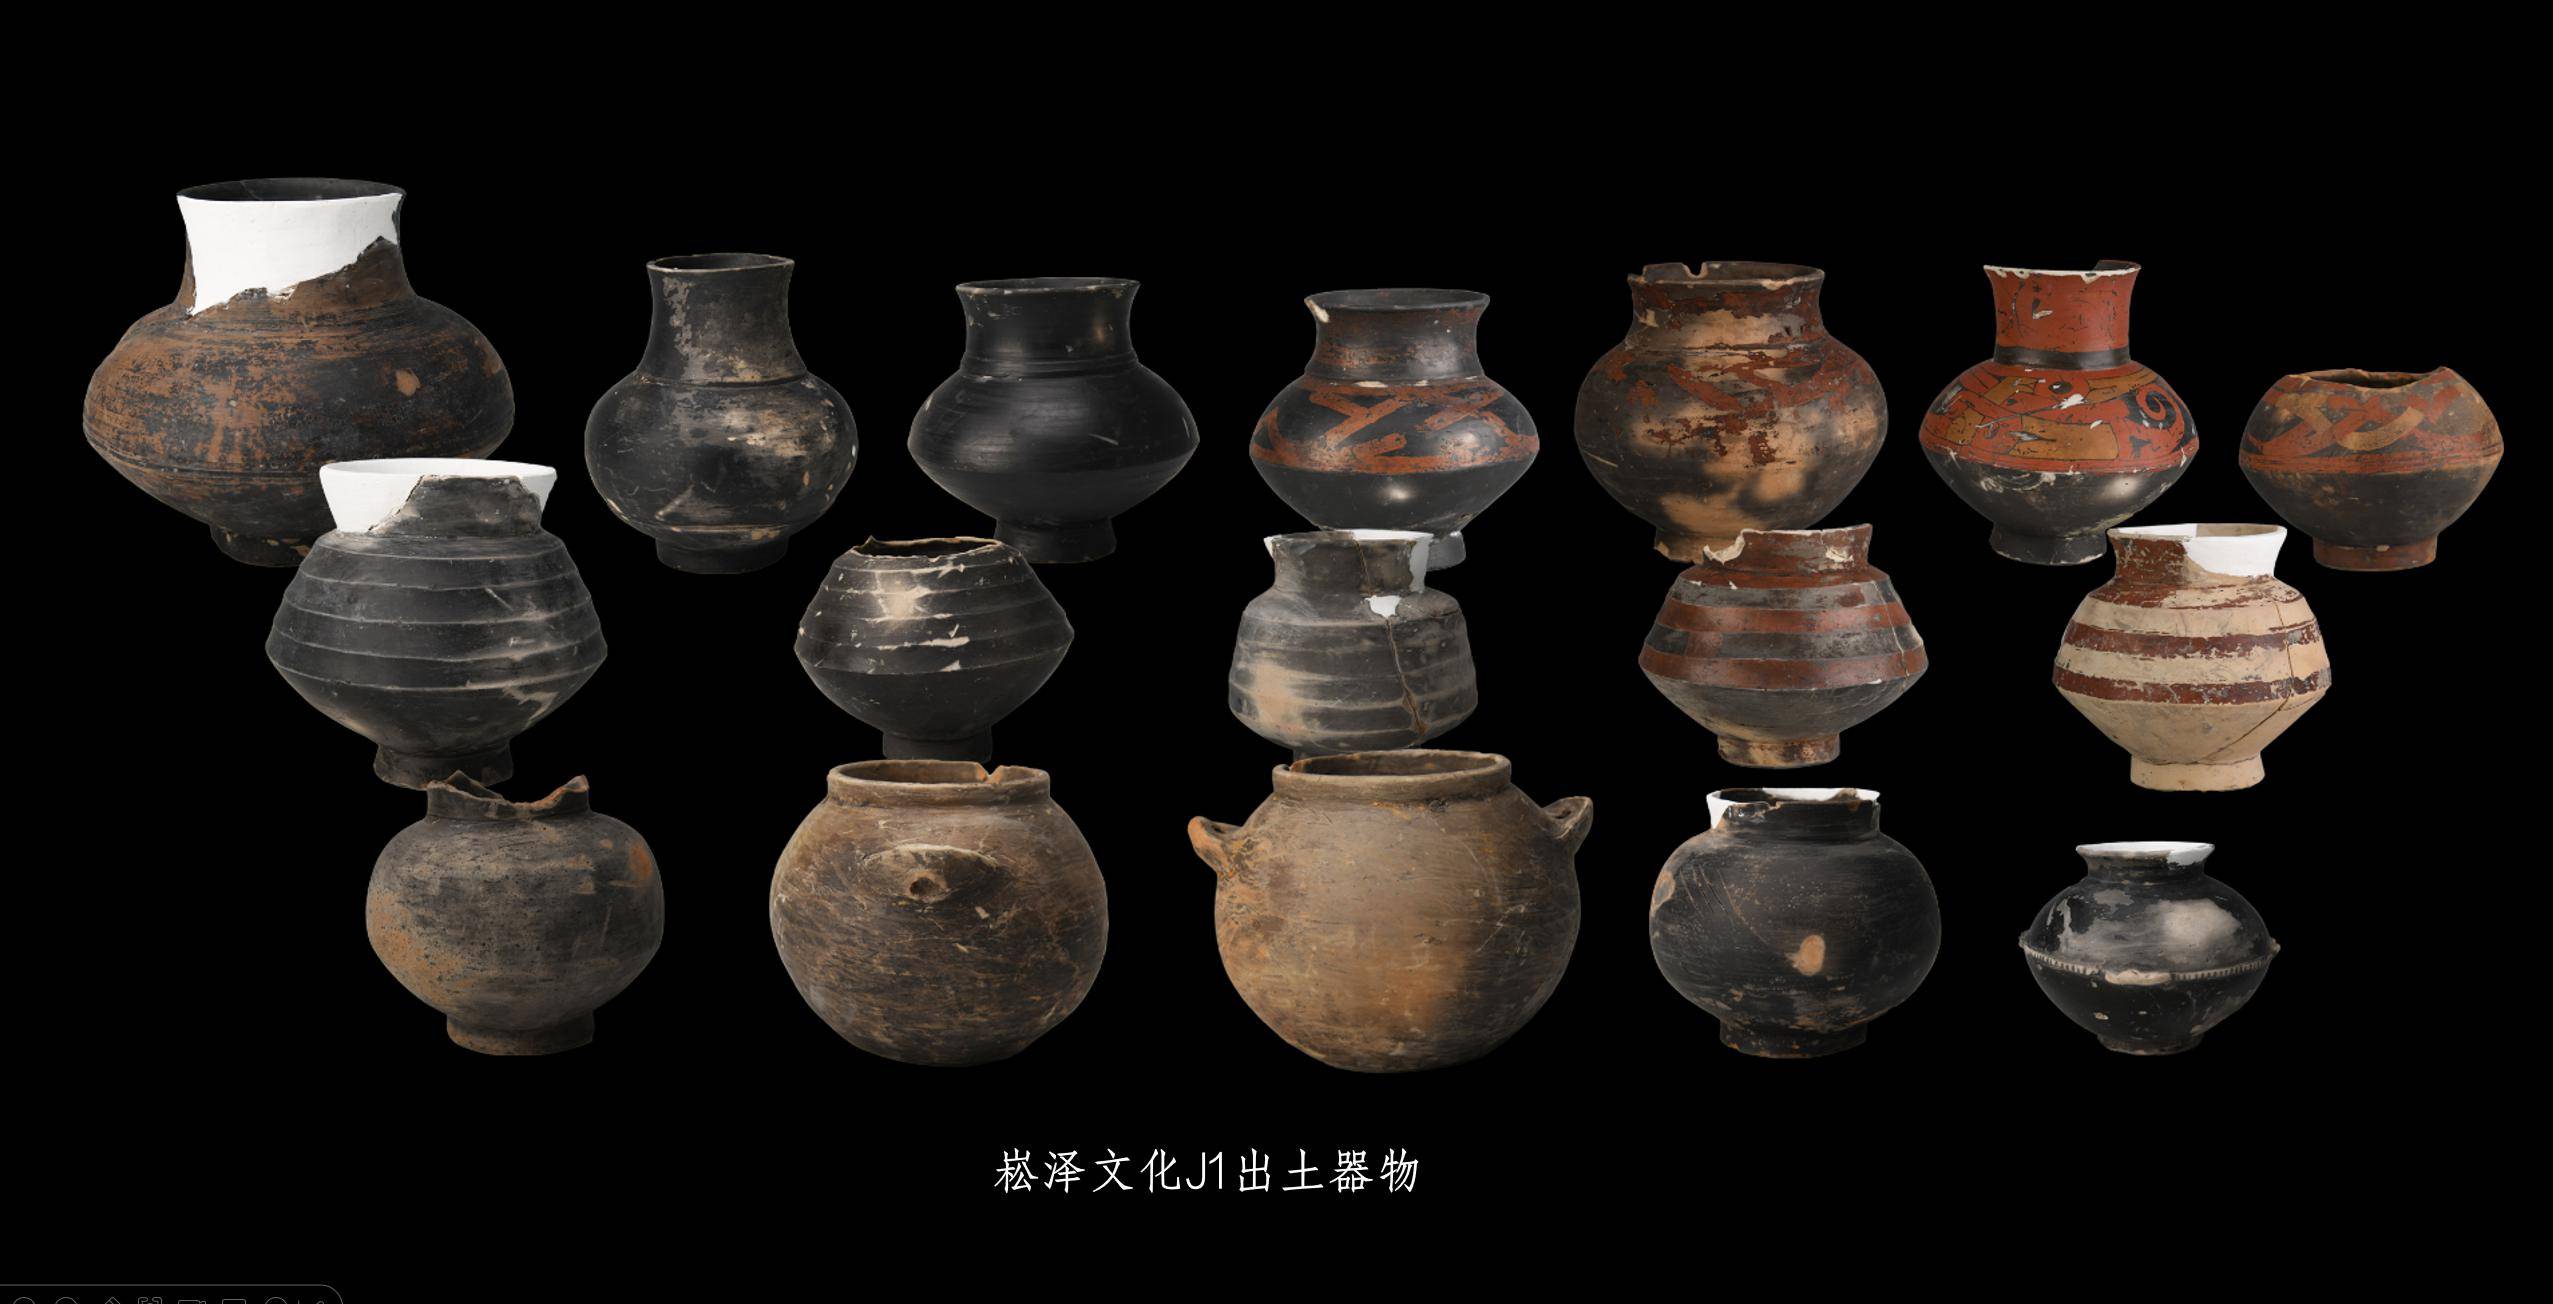 艺术与考古学院教授,博导林留根指出,长江下游,既有苏州东山村遗址